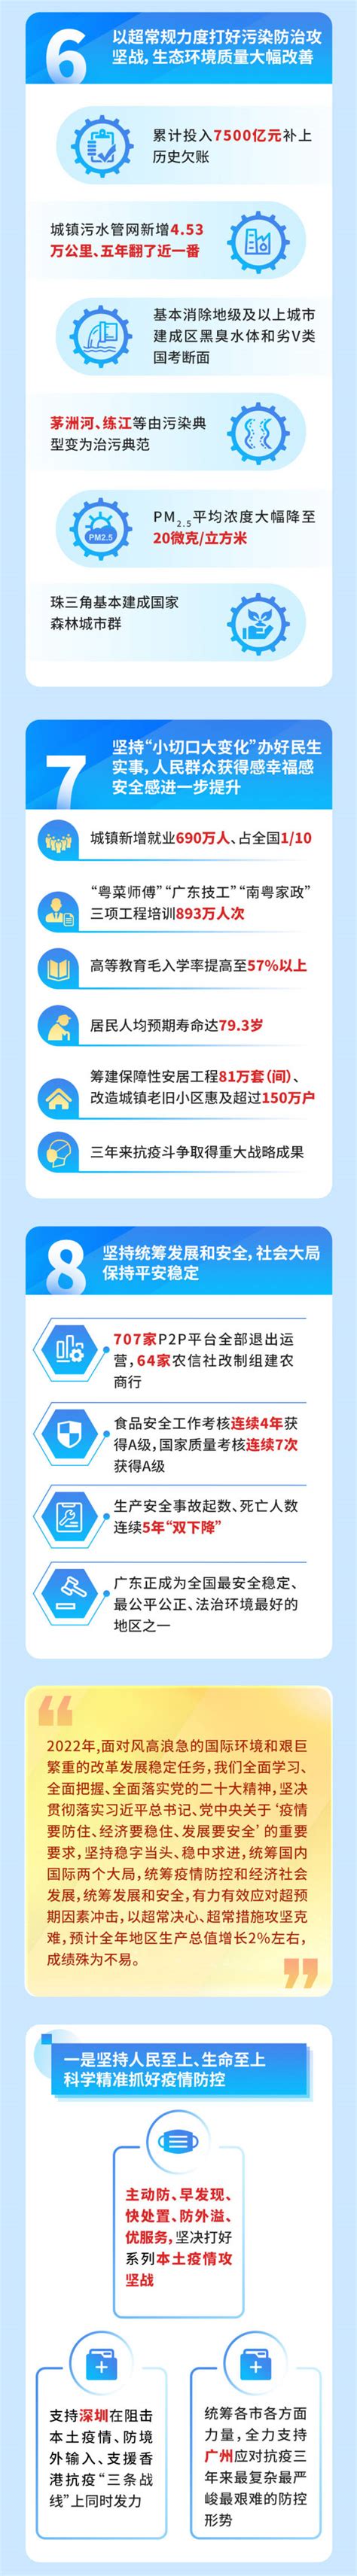 一图读懂2021广东省政府工作报告_深圳新闻网